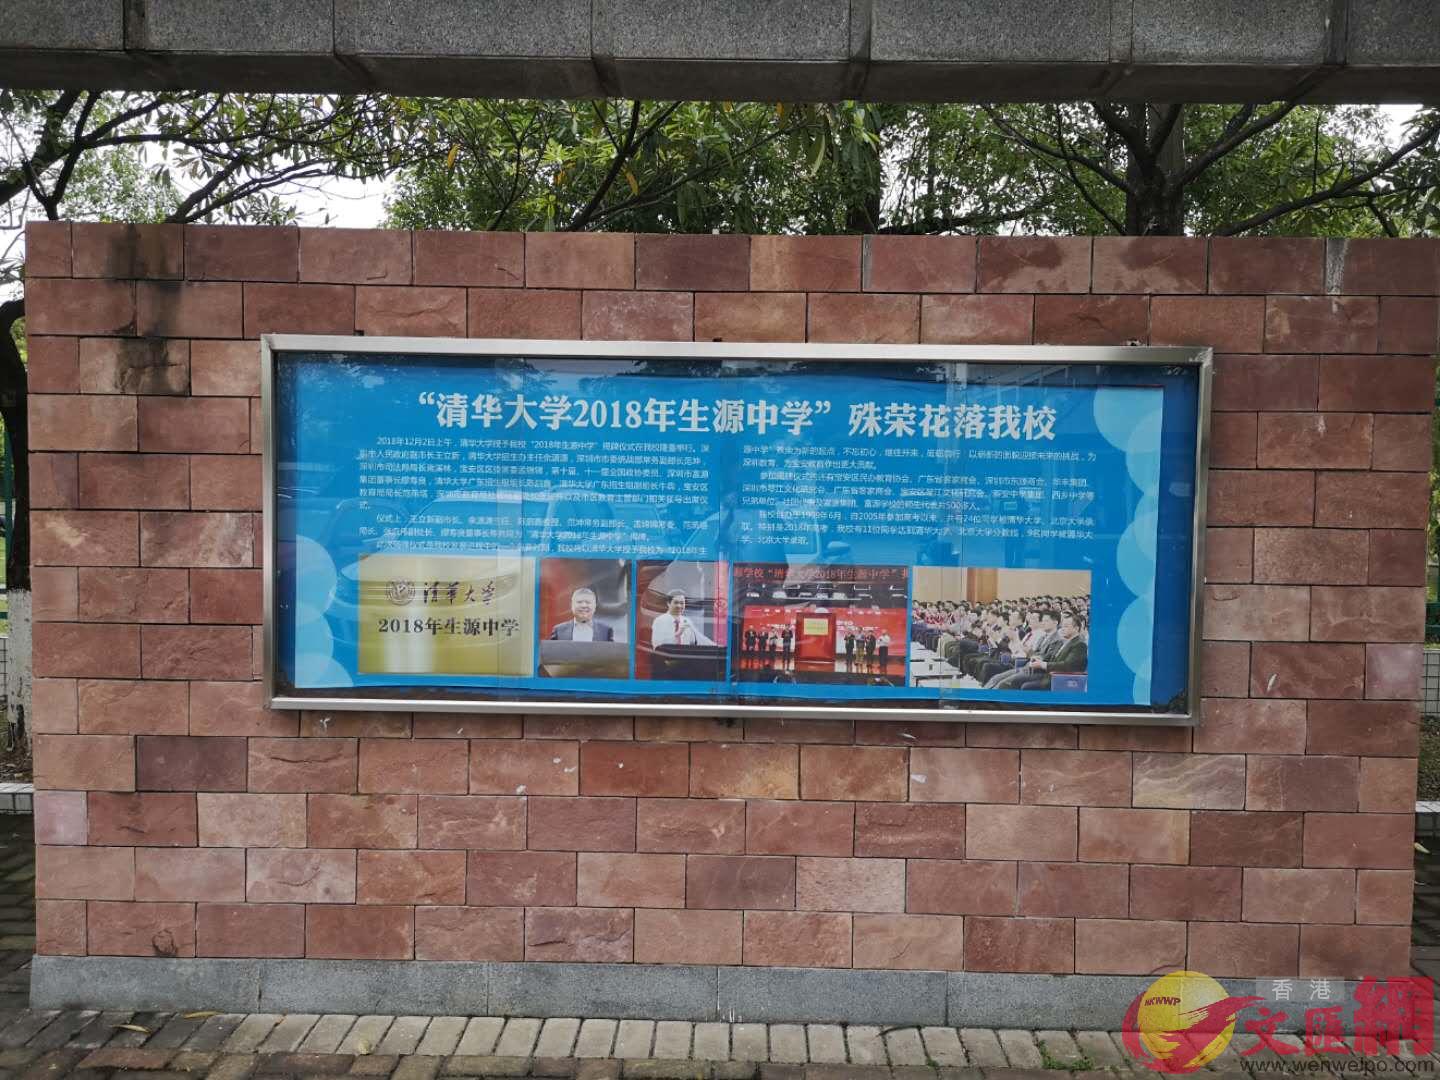 學校門口宣傳欄顯示該校為清華大學生源中學 記者石華攝